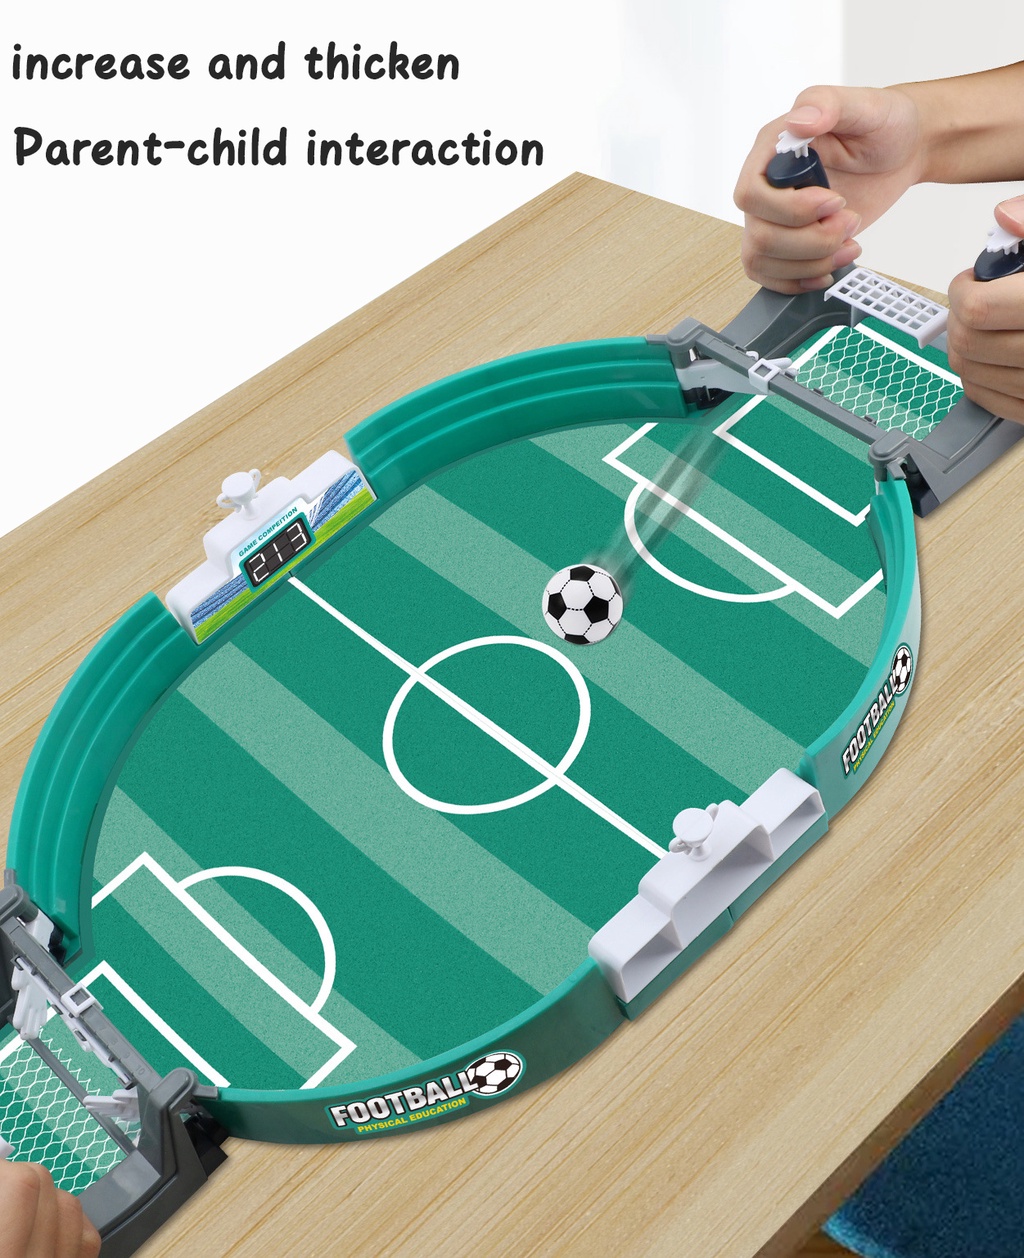 Brinquedos de futebol de mesa para crianças, Brinquedos interativos de  futebol de mesa para casa, escola e viagens, Jogos de mesa de futebol de  interação entre pais e filhos para churrascos 